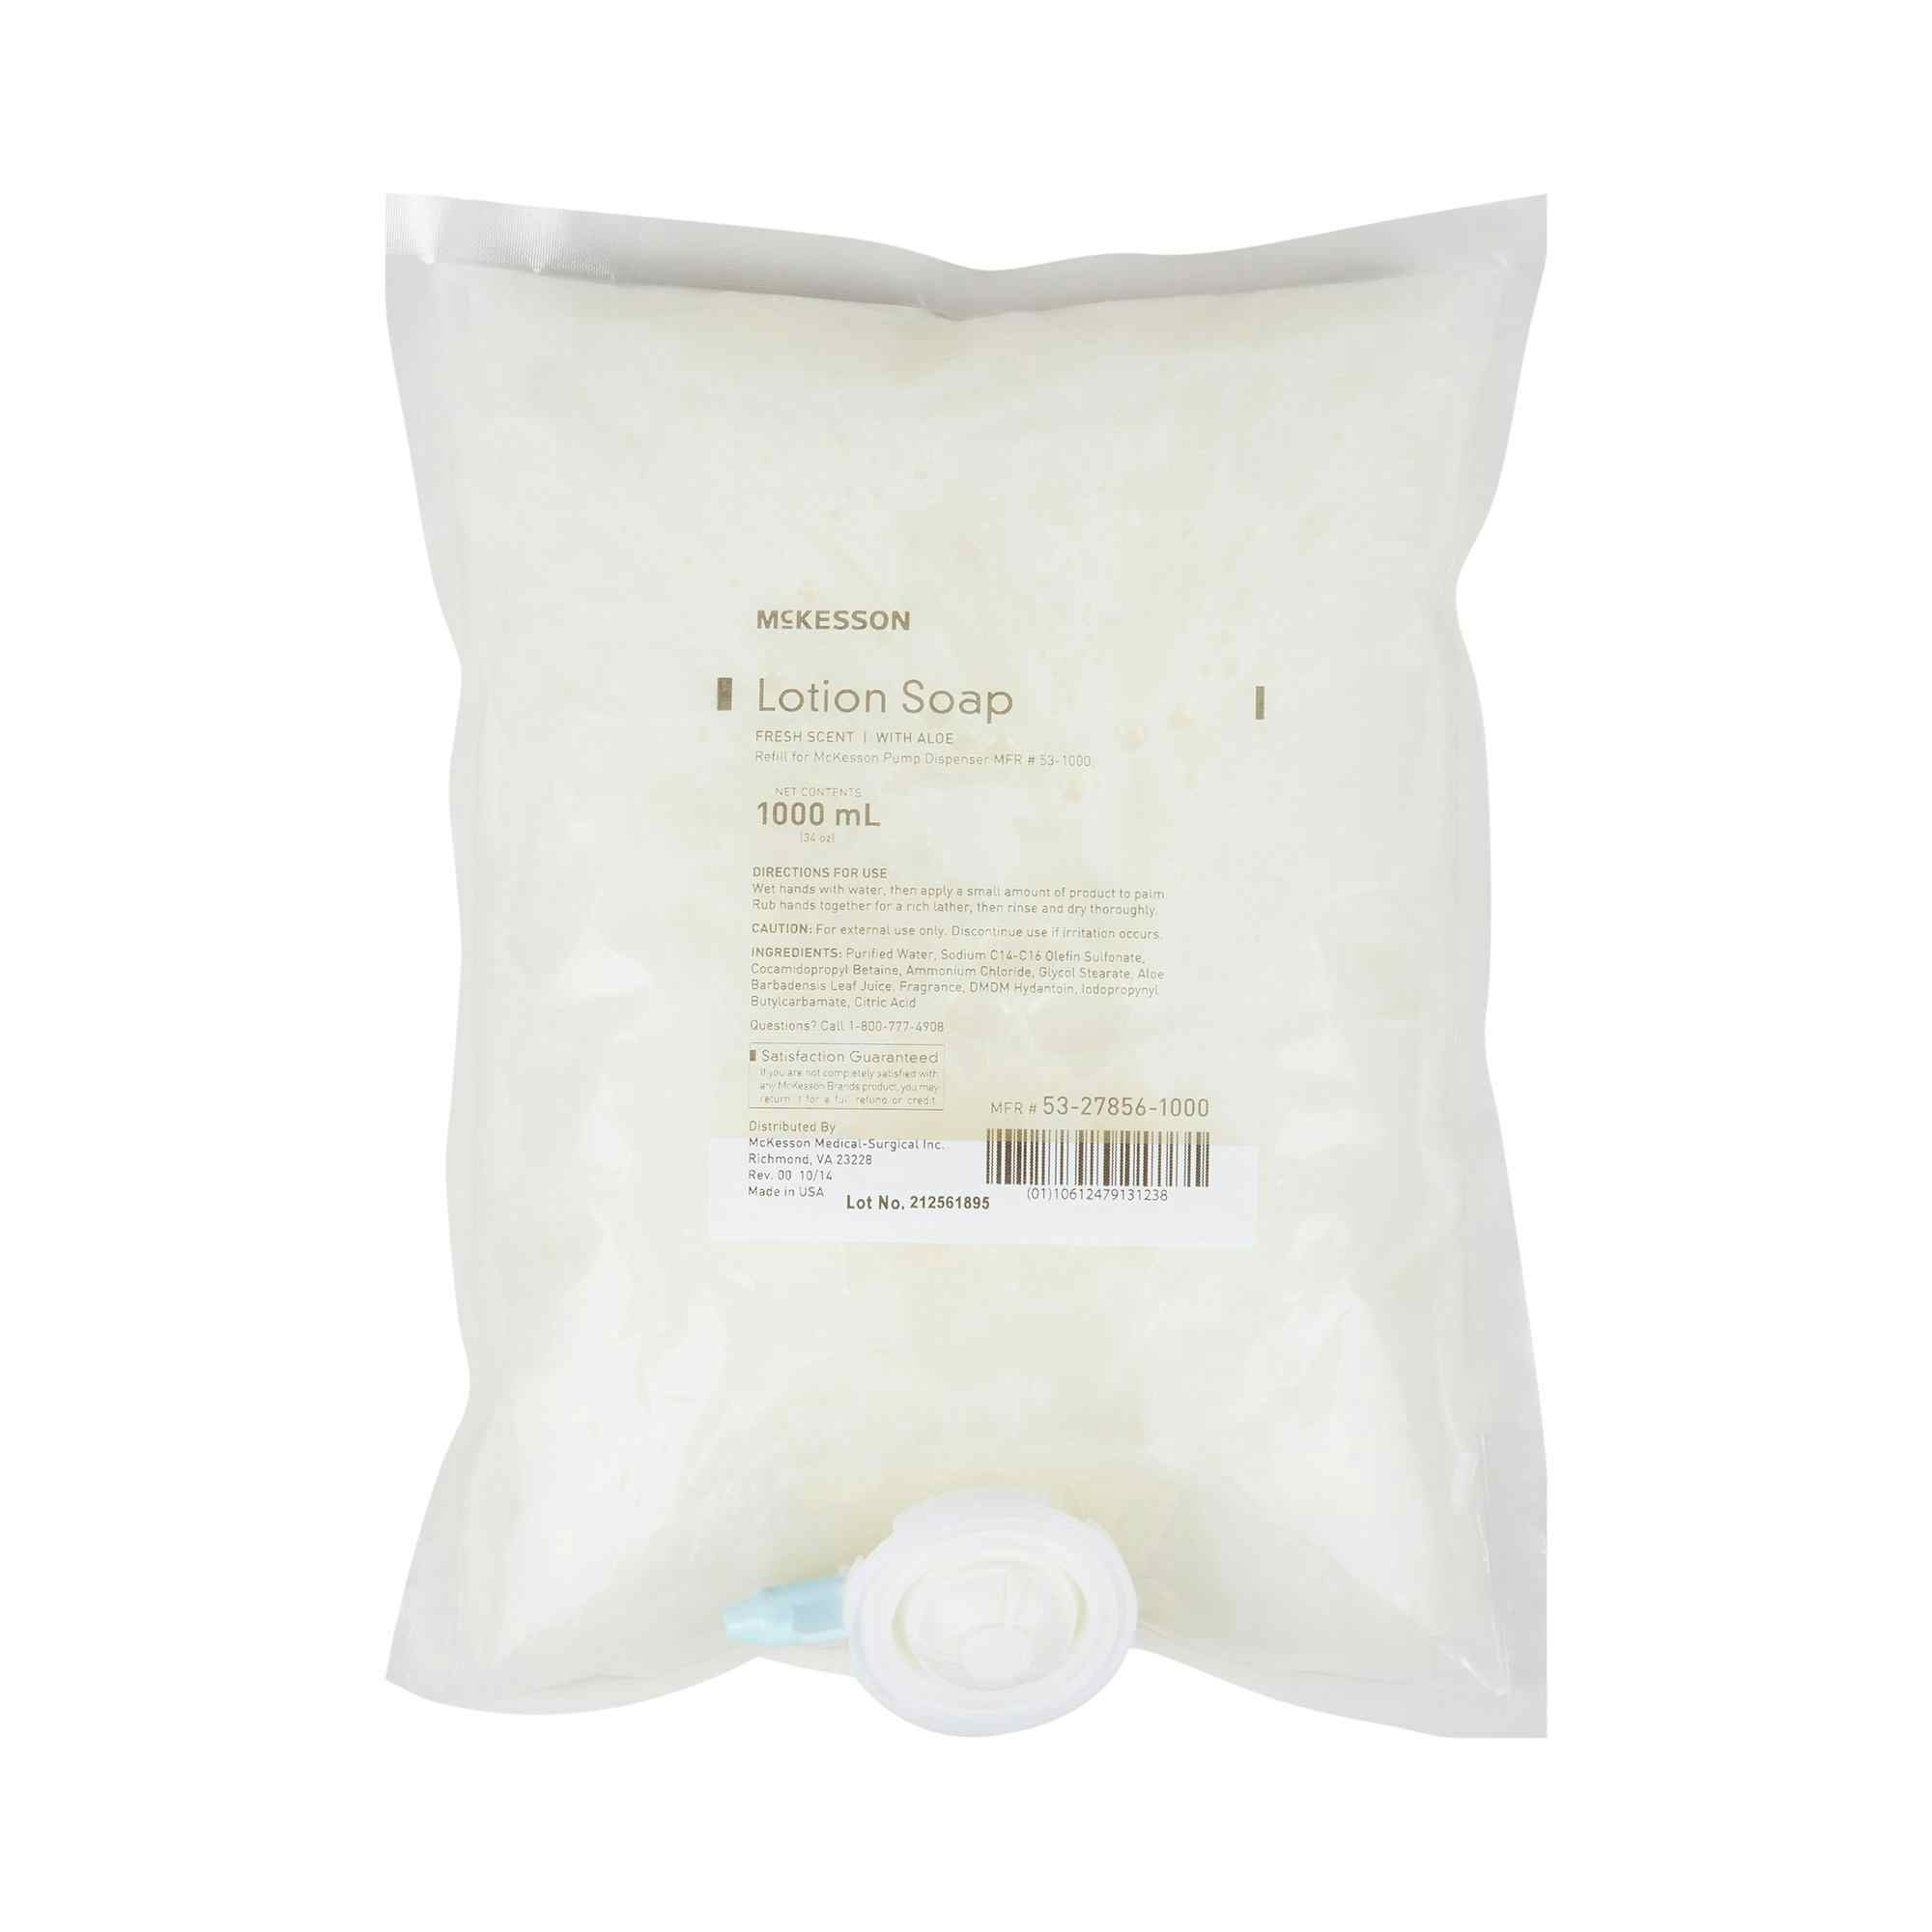 McKesson Lotion Hand Soap Refill, Fresh Scent, 53-27856-1000, 1,000 mL  - Case of 10